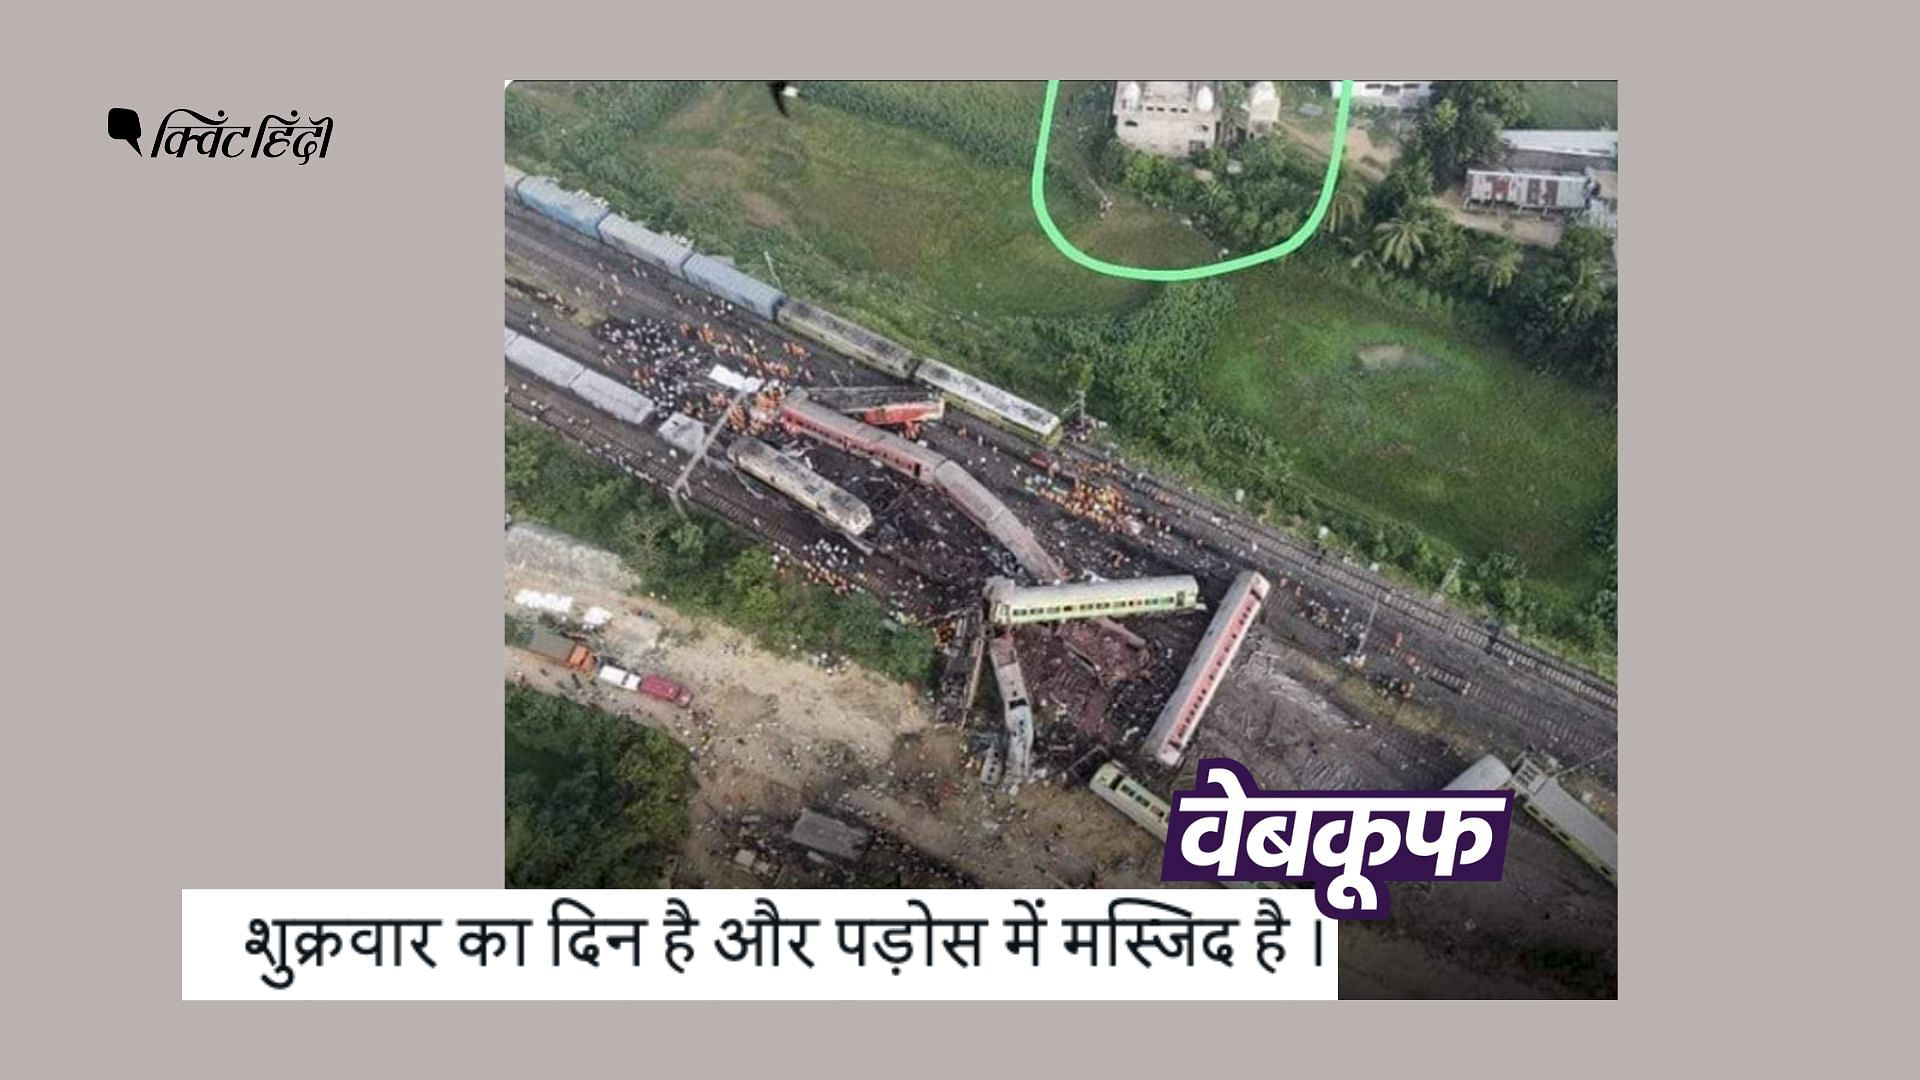 <div class="paragraphs"><p>ओडिशा में हुए ट्रेन हादसे की तस्वीर गलत दावे से वायरल</p></div>